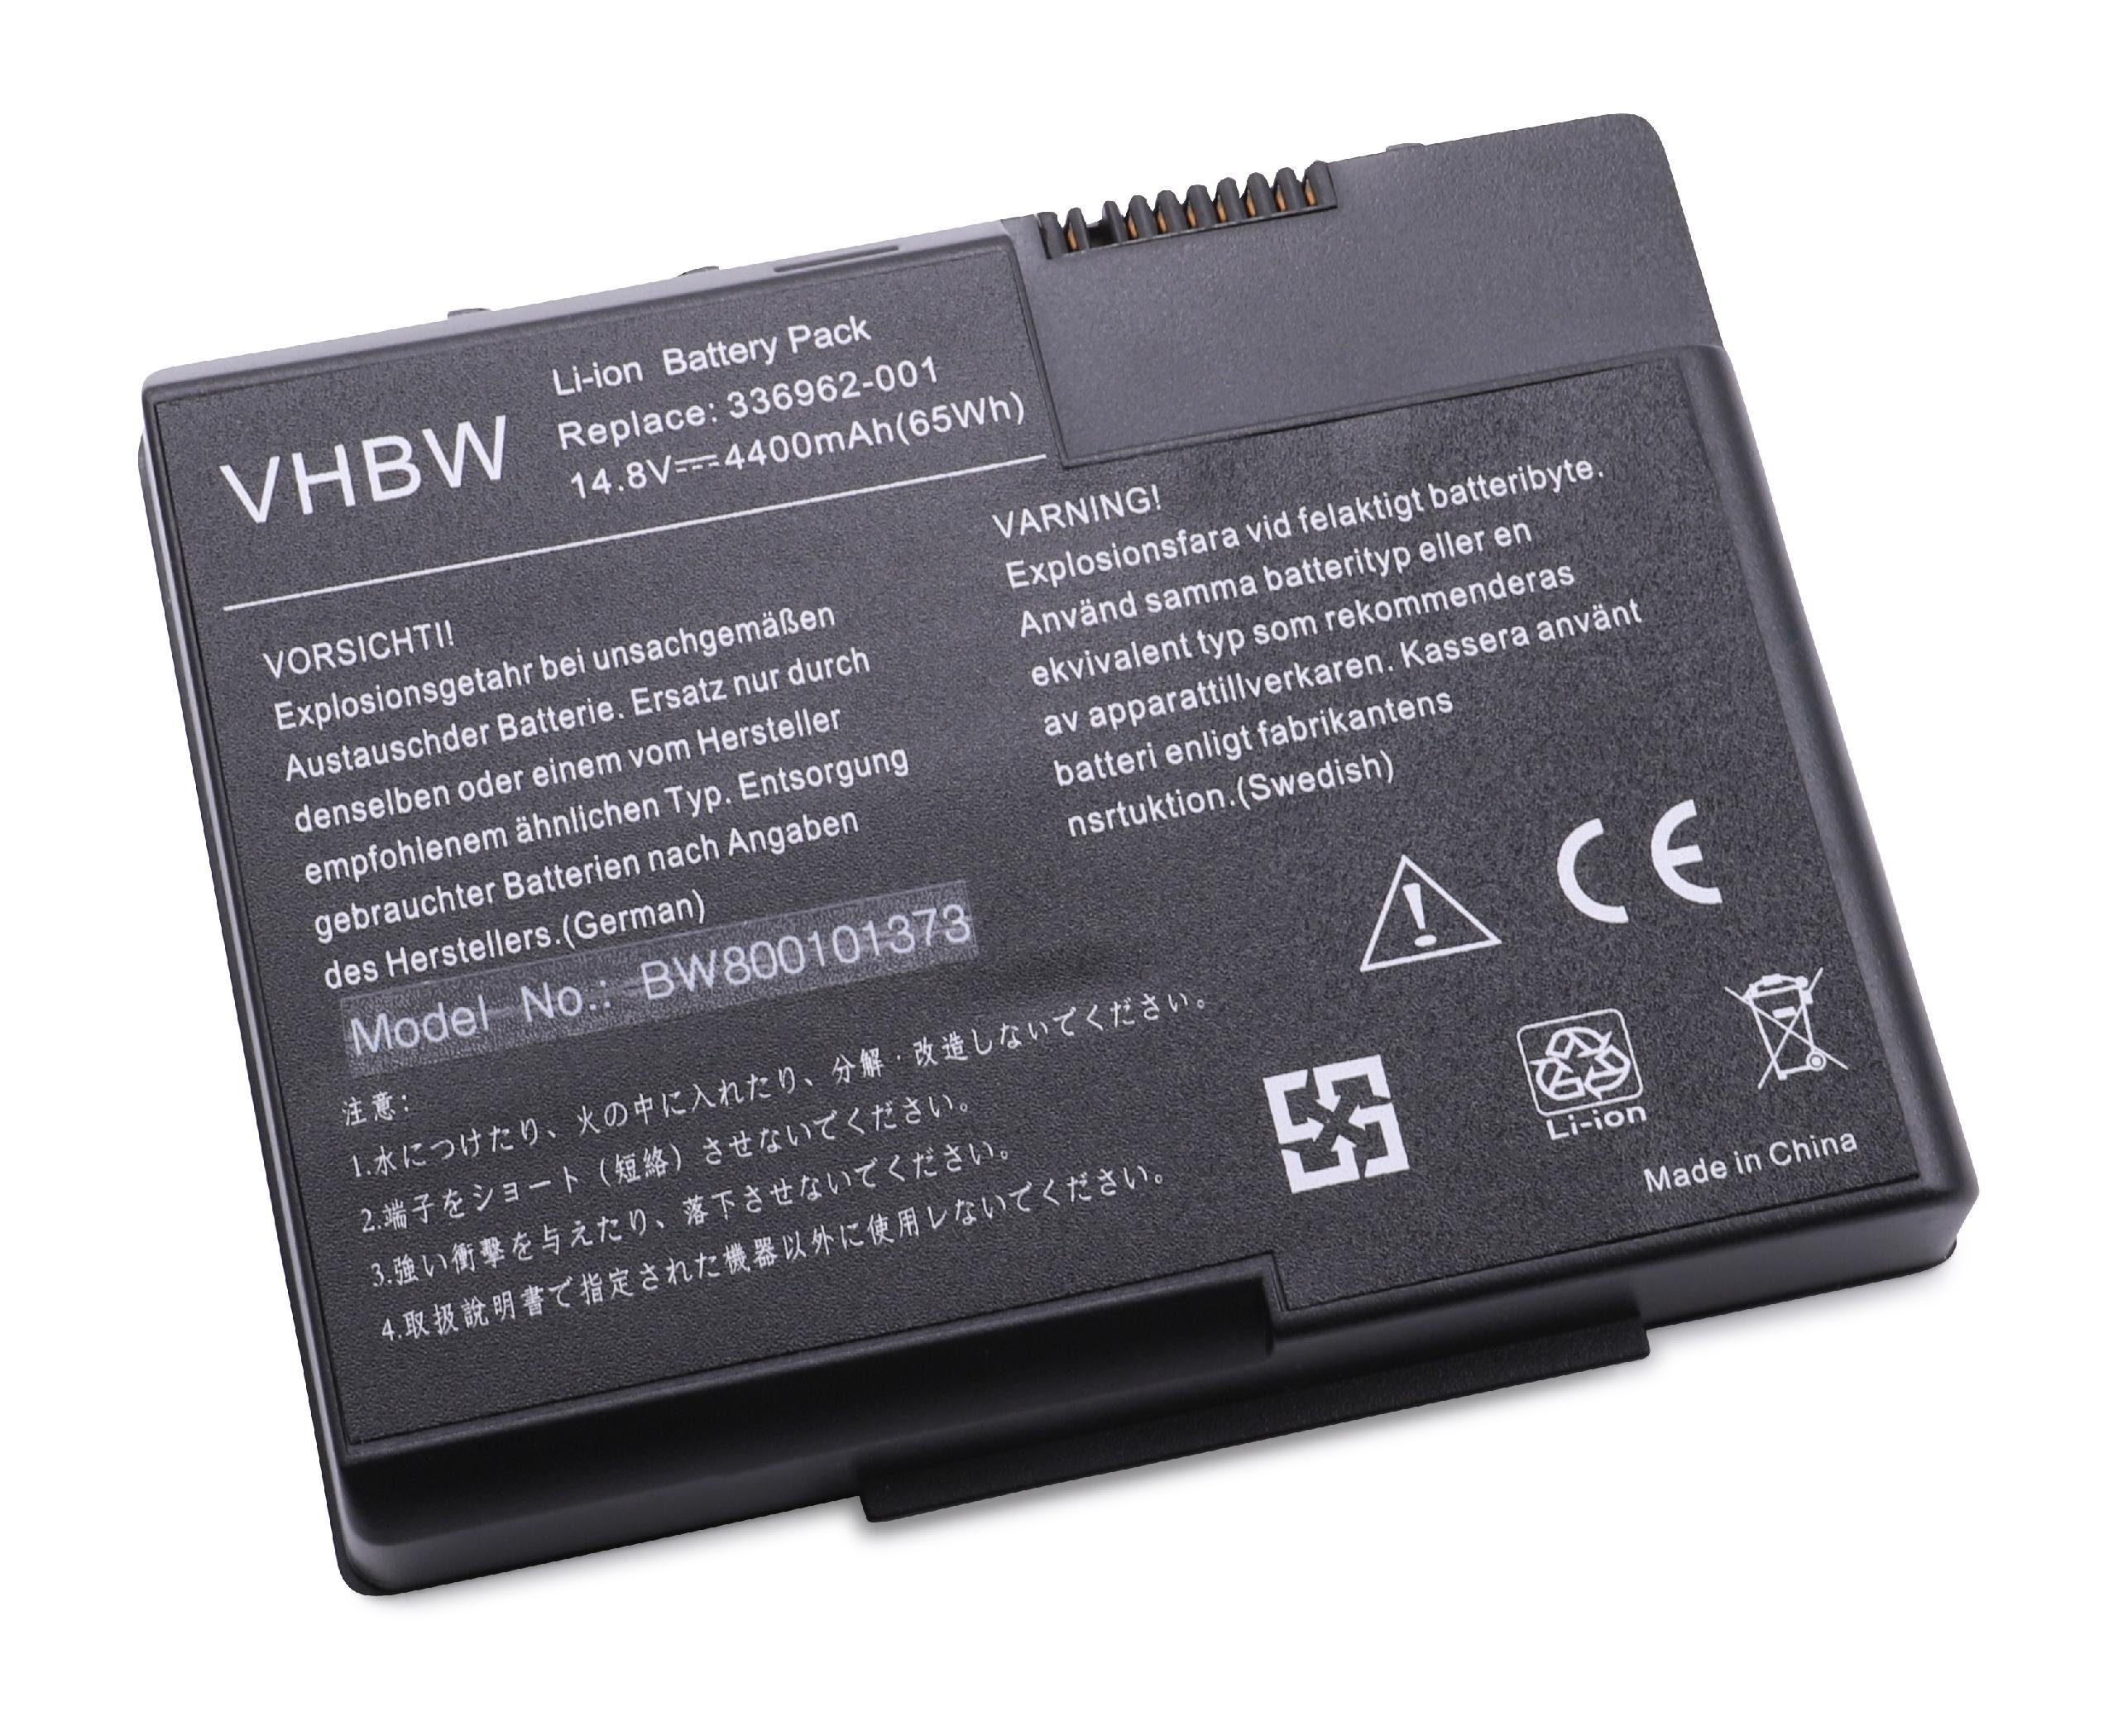 vhbw passend für HP Pavilion zt3017WM (DM781A), zt3017WM (DM781AR), Laptop-Akku 4400 mAh